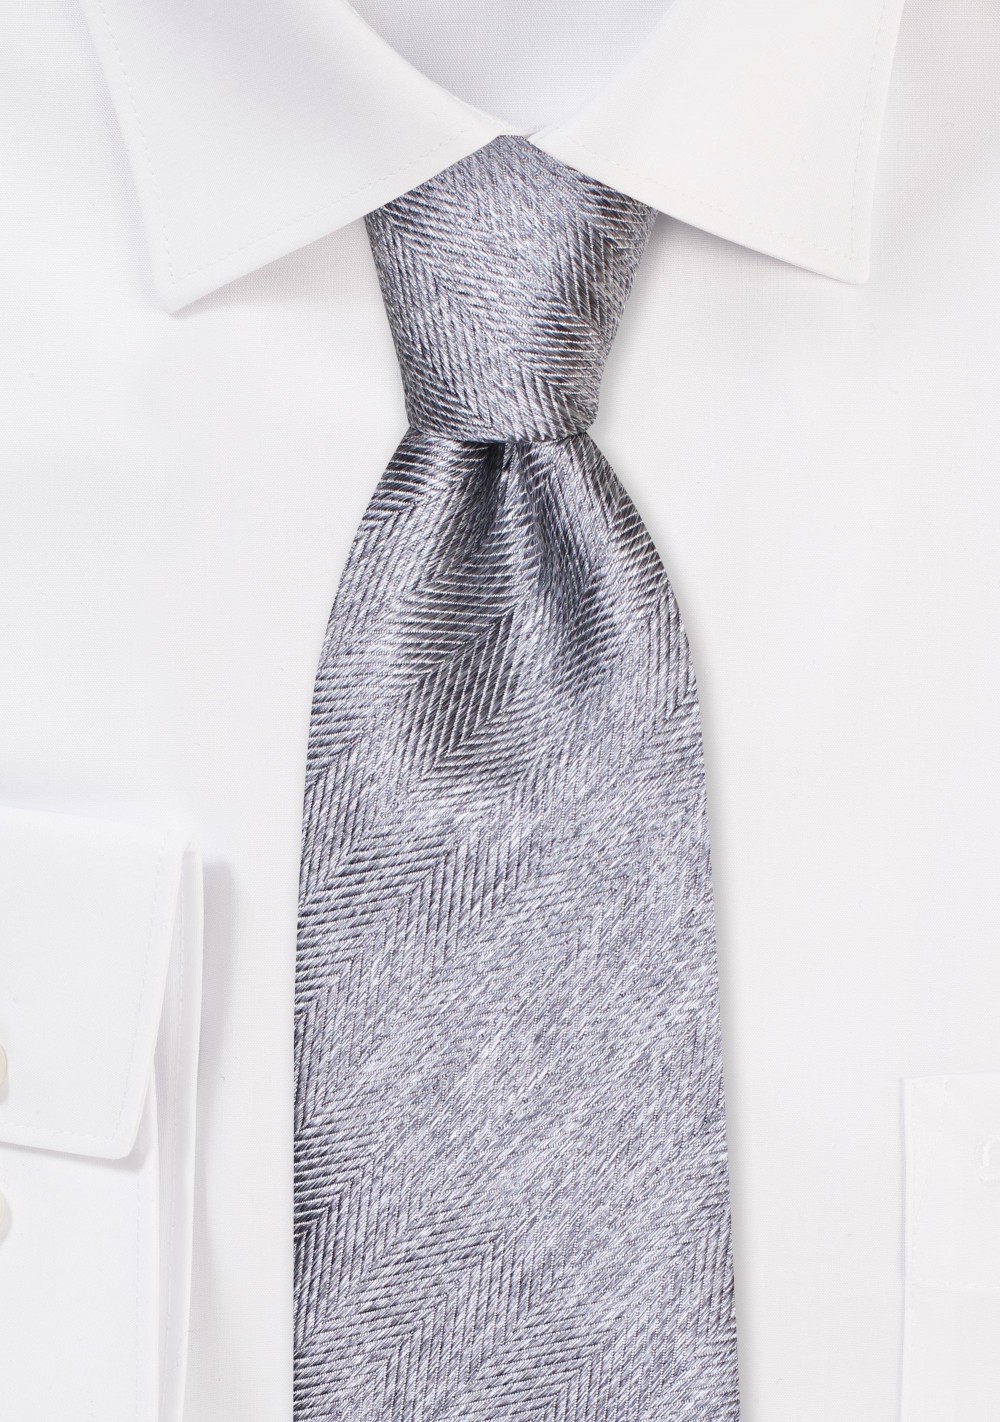 Textured Herringbone Tie in Dophin Grey